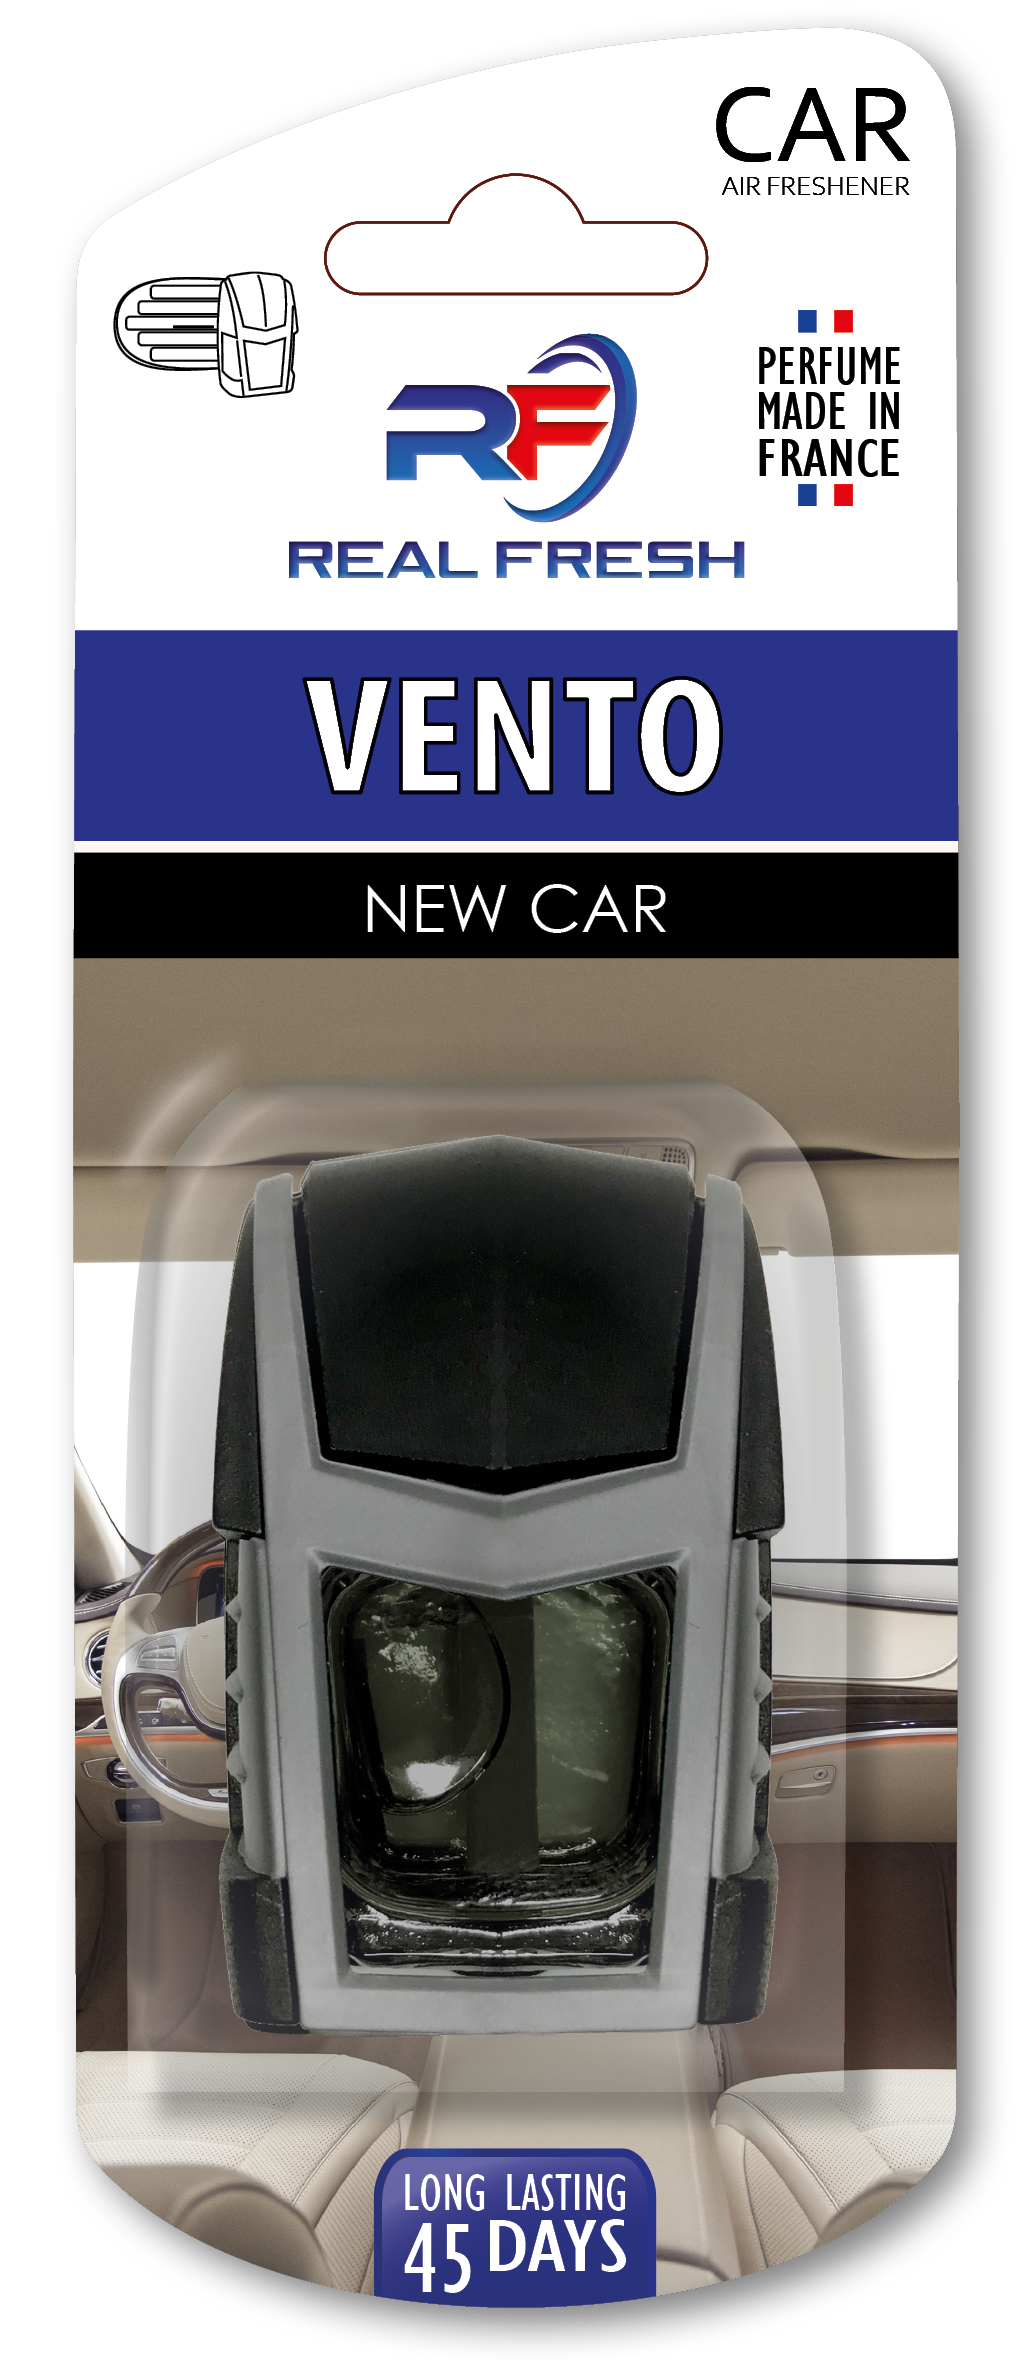 Vento New Car Image